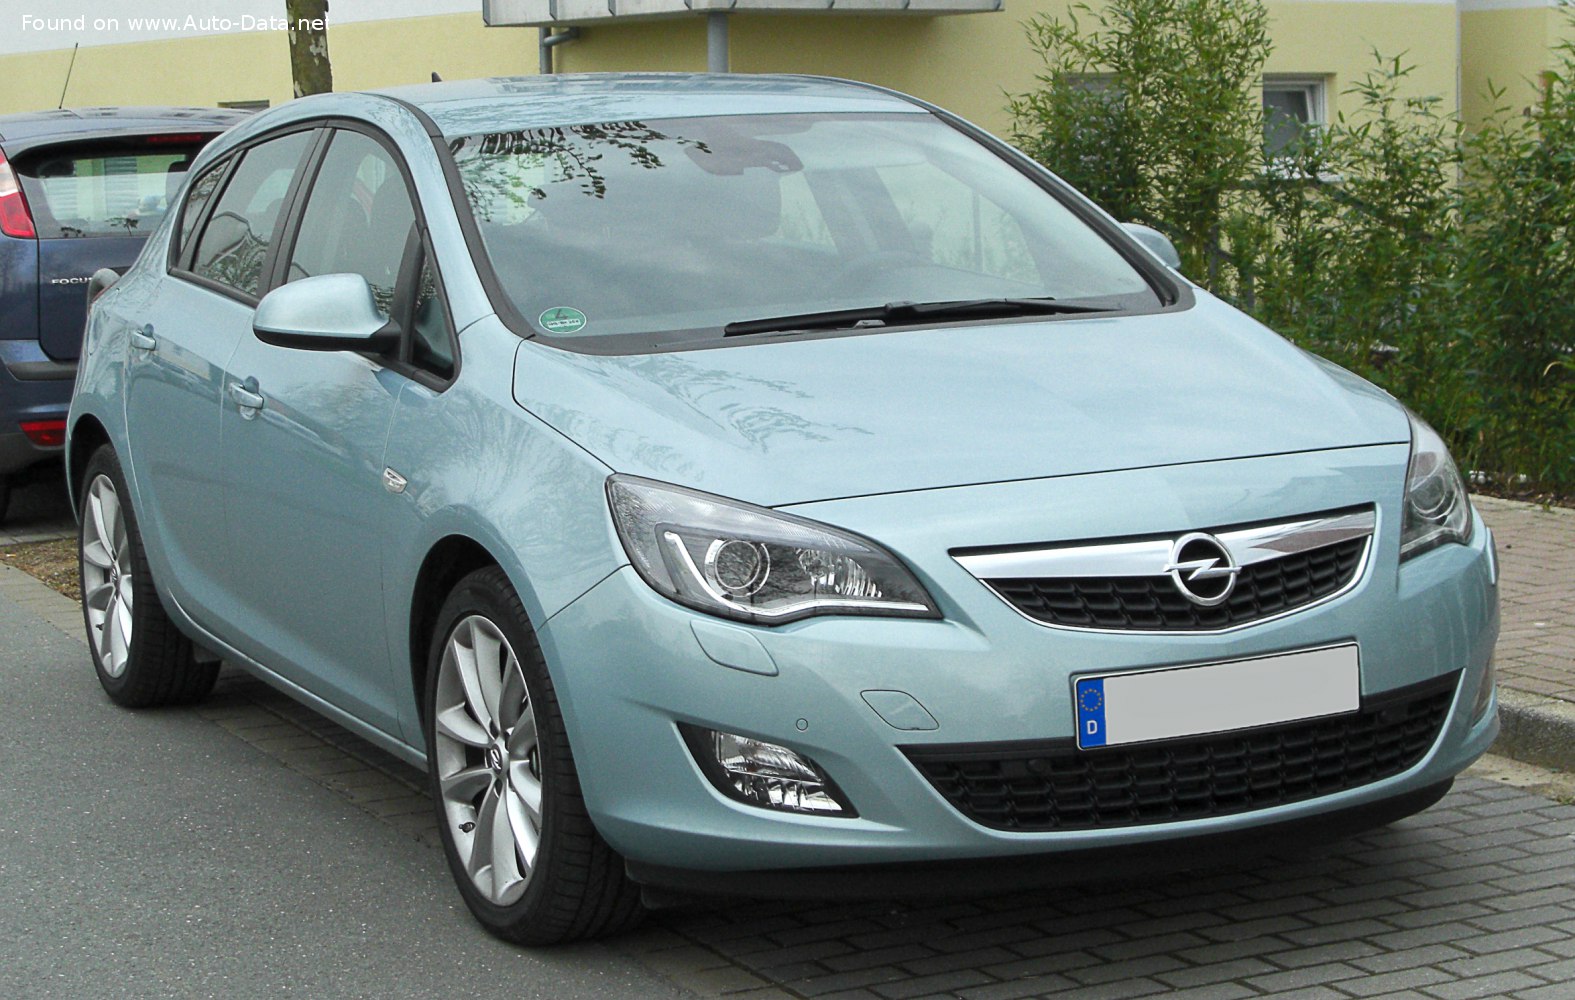 https://www.auto-data.net/images/f84/Opel-Astra-J.jpg